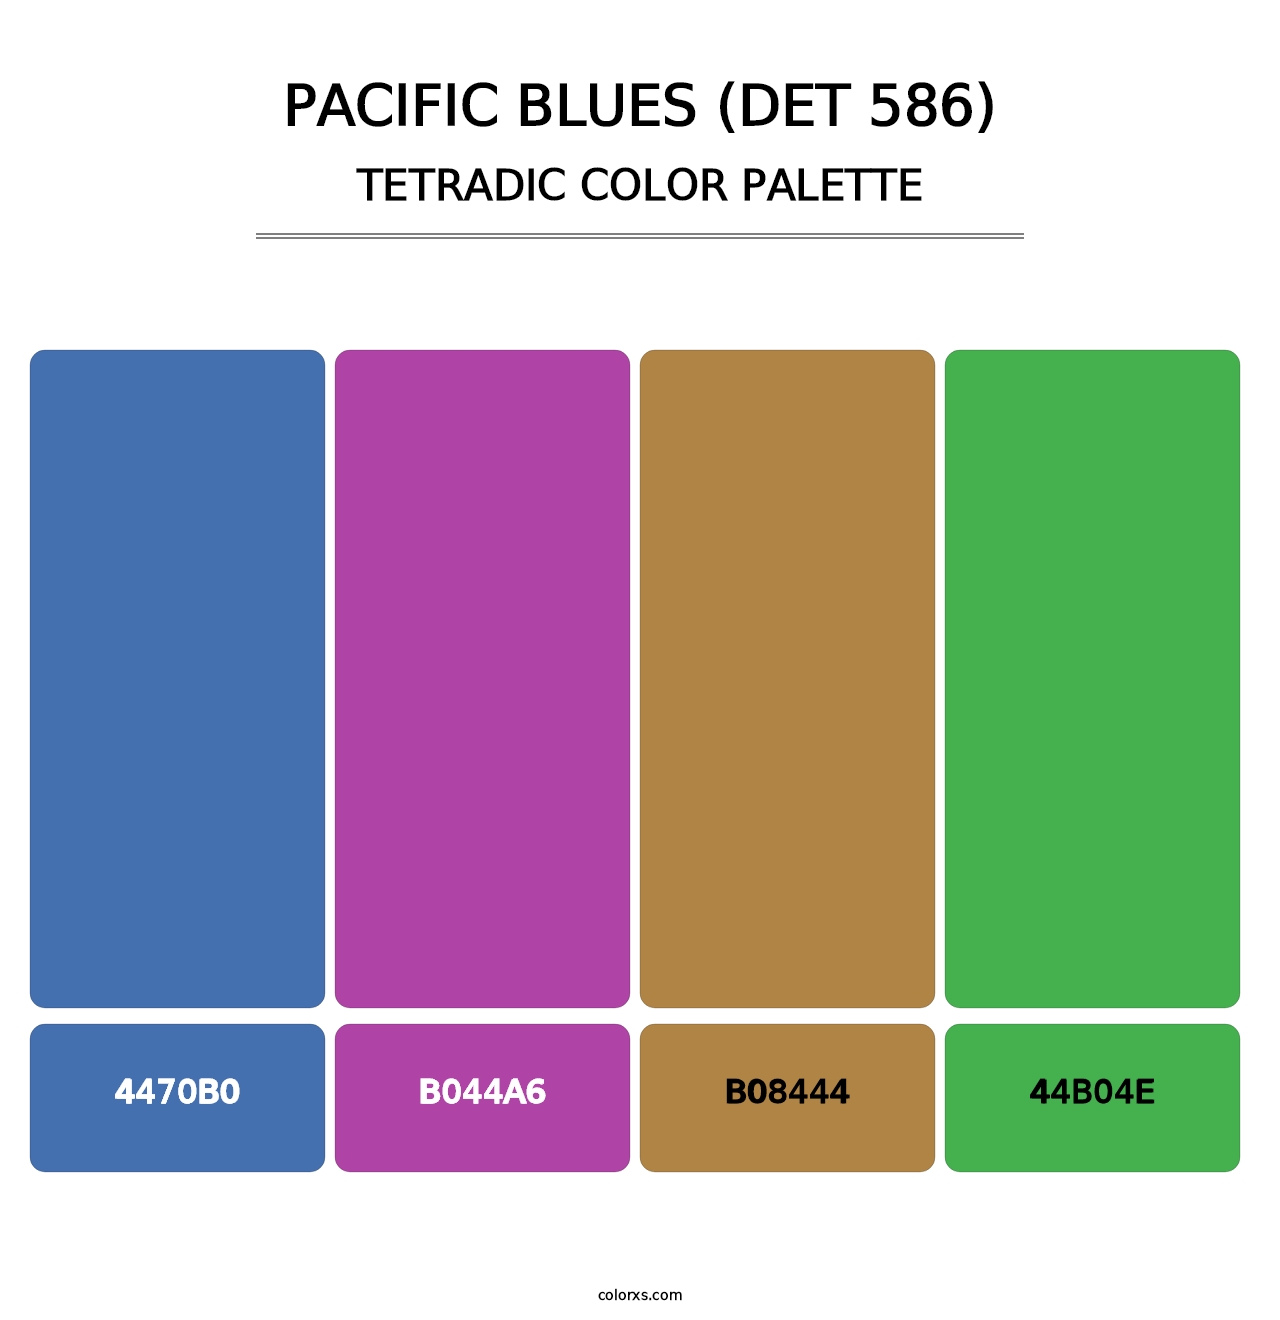 Pacific Blues (DET 586) - Tetradic Color Palette